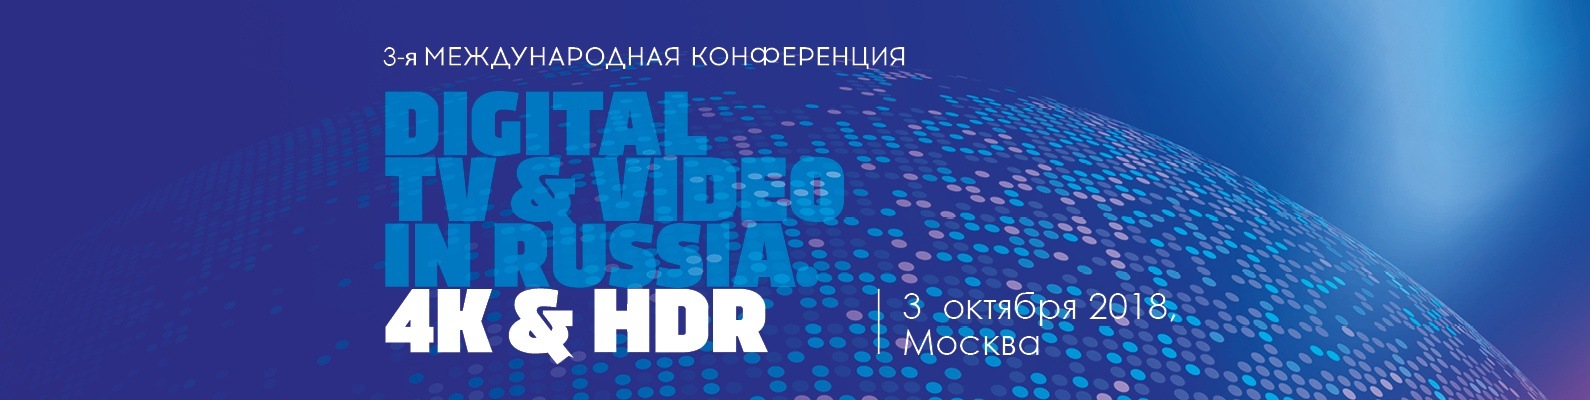 Денис Лукаш принял участие в конференции Digital TV&Video in Russia. 4K & HDR